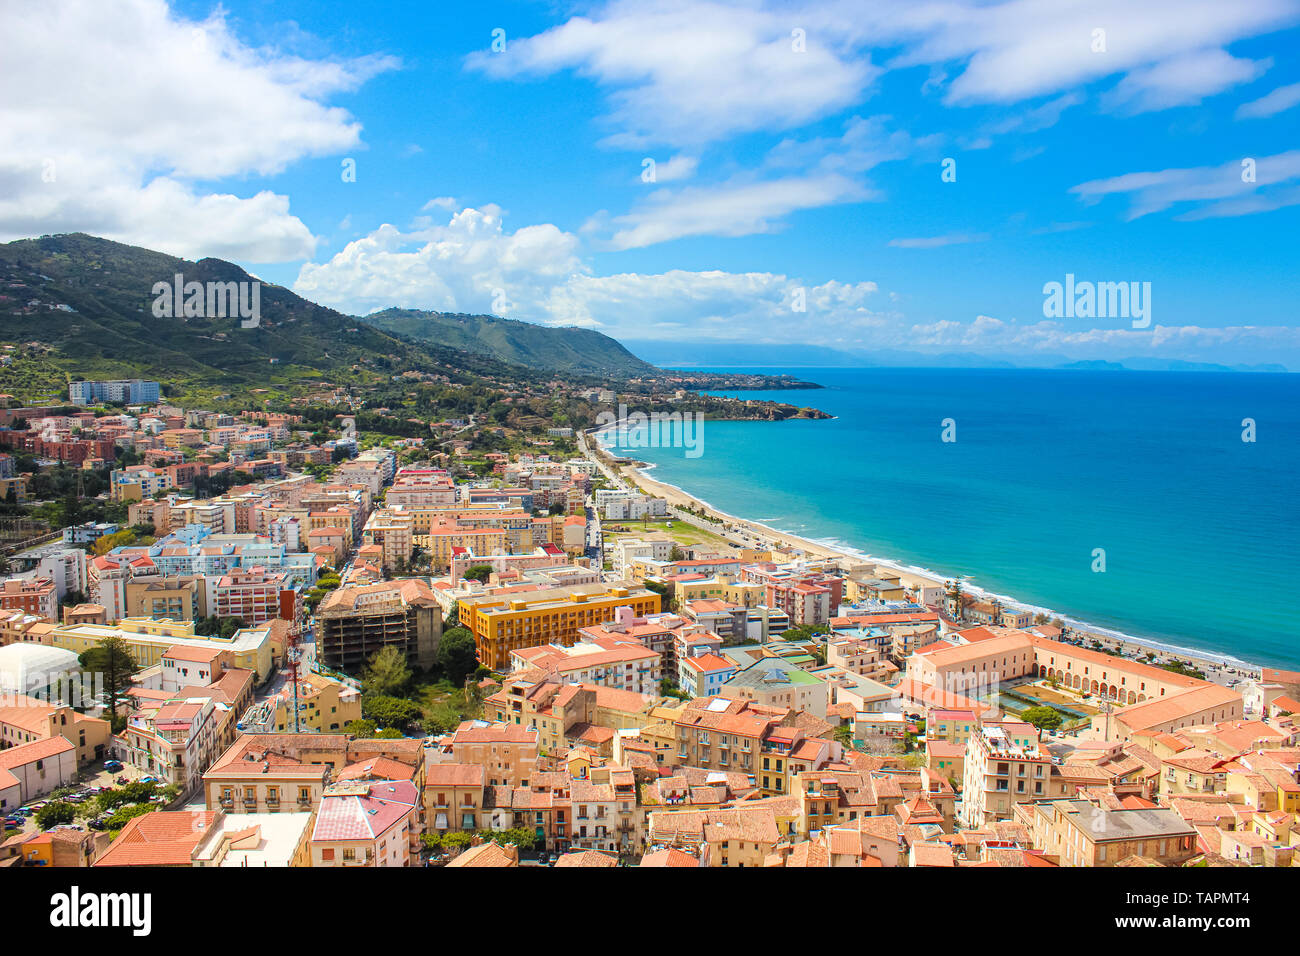 Incredibile paesaggio marino di Cefalù Sicilia in Italia prese dalle colline adiacenti che si affaccia sulla baia. La bella città sulla costa tirrenica è popolare in estate Foto Stock